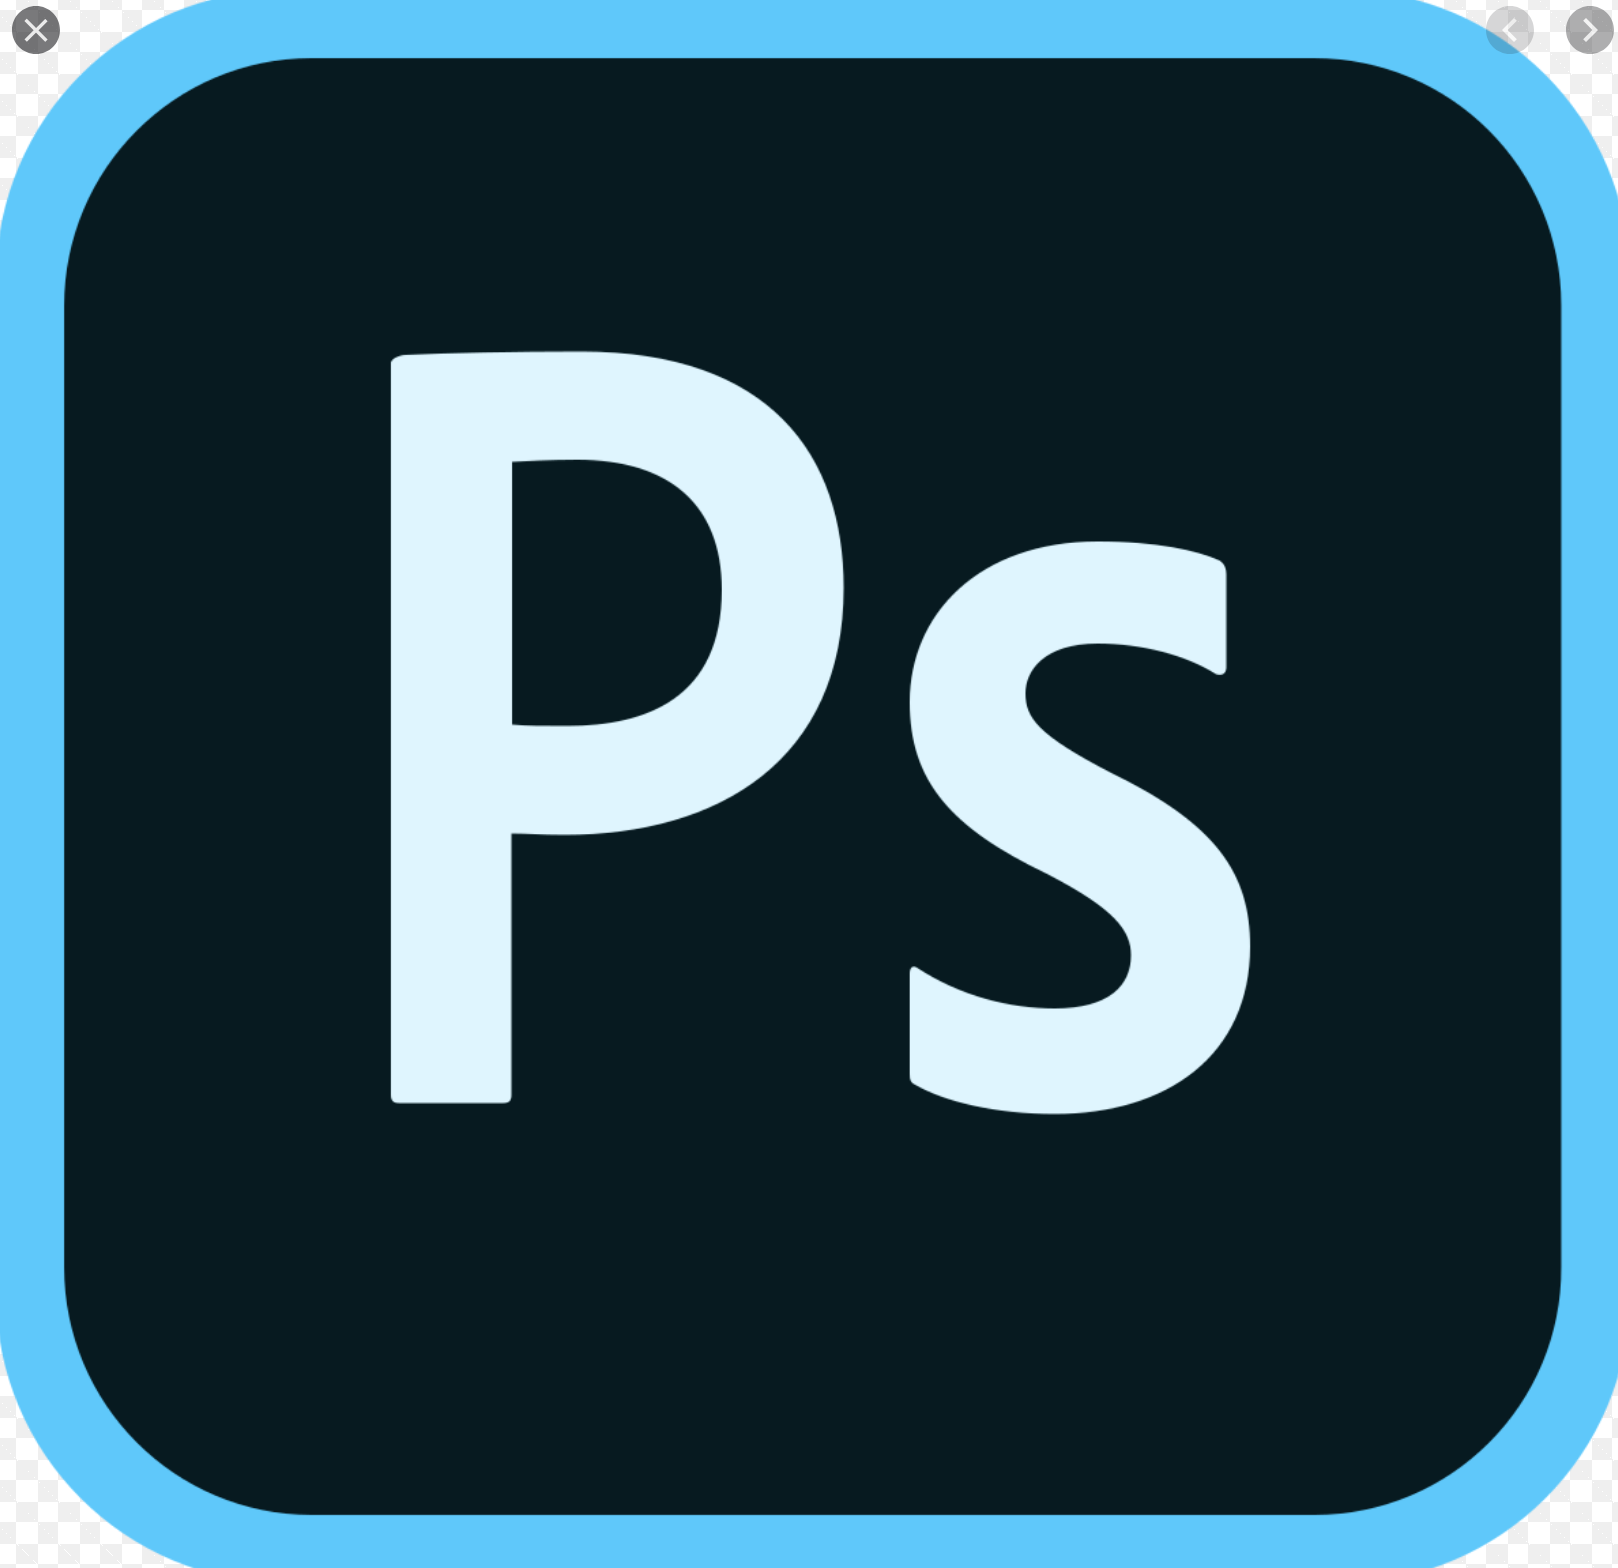 Adobe Photoshop das Beste unter den Bildbearbeitungsprogrammen. Photoshop intensiv, Zeichenprogramm